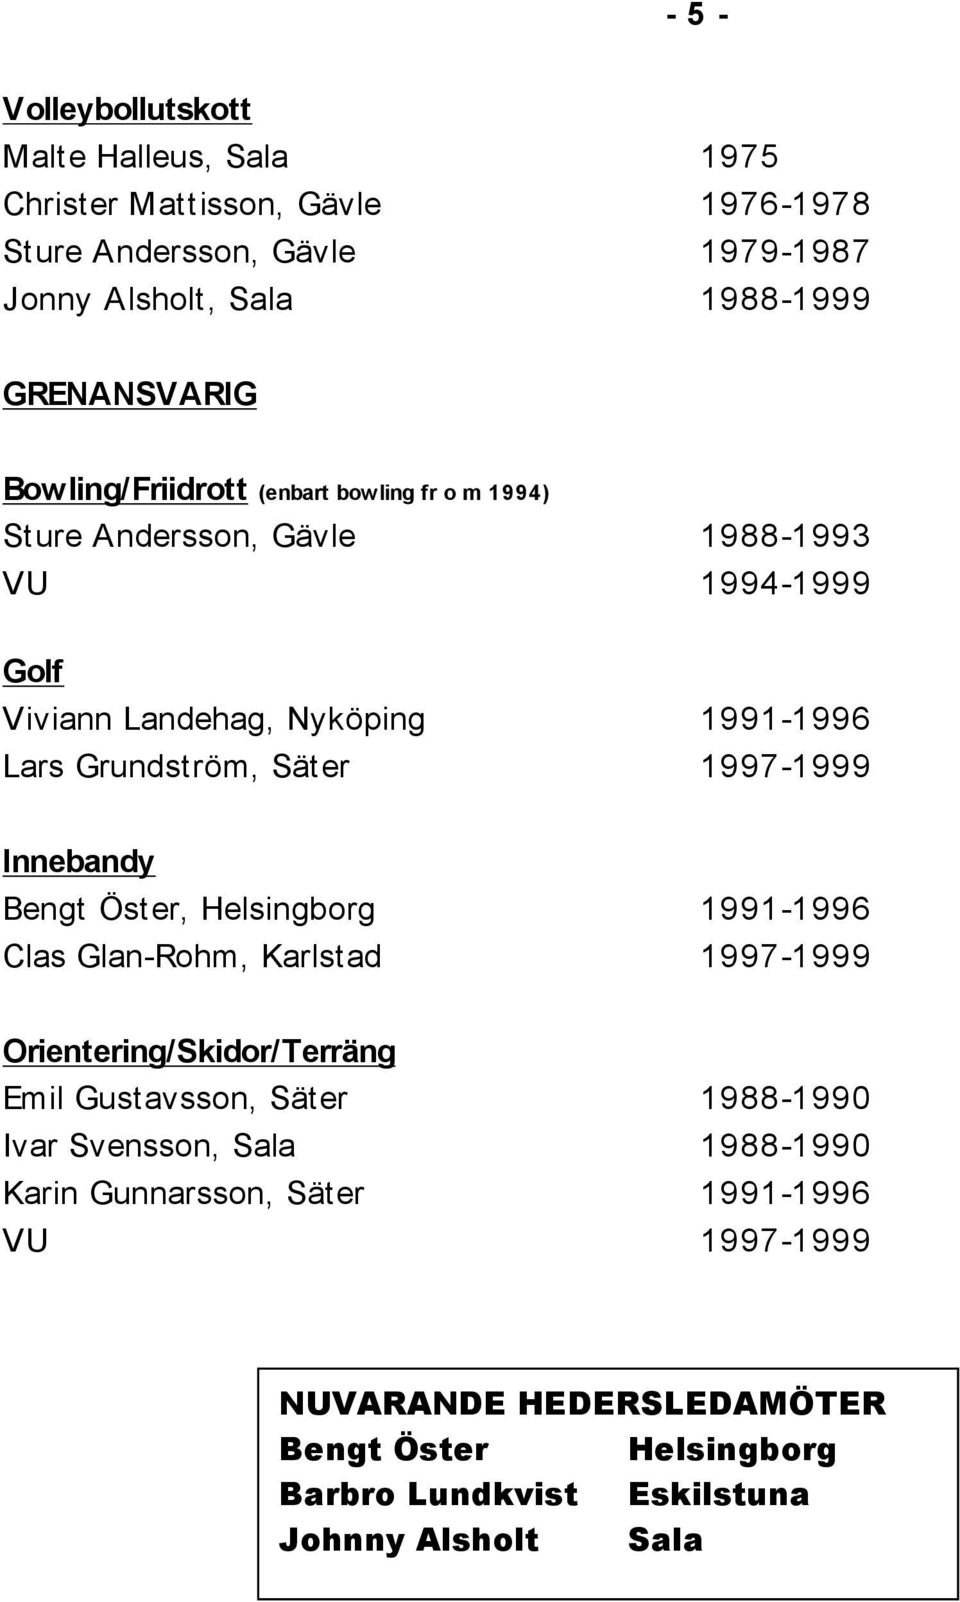 1997-1999 Innebandy Bengt Öster, Helsingborg 1991-1996 Clas Glan-Rohm, Karlstad 1997-1999 Orientering/Skidor/Terräng Emil Gustavsson, Säter 1988-1990 Ivar